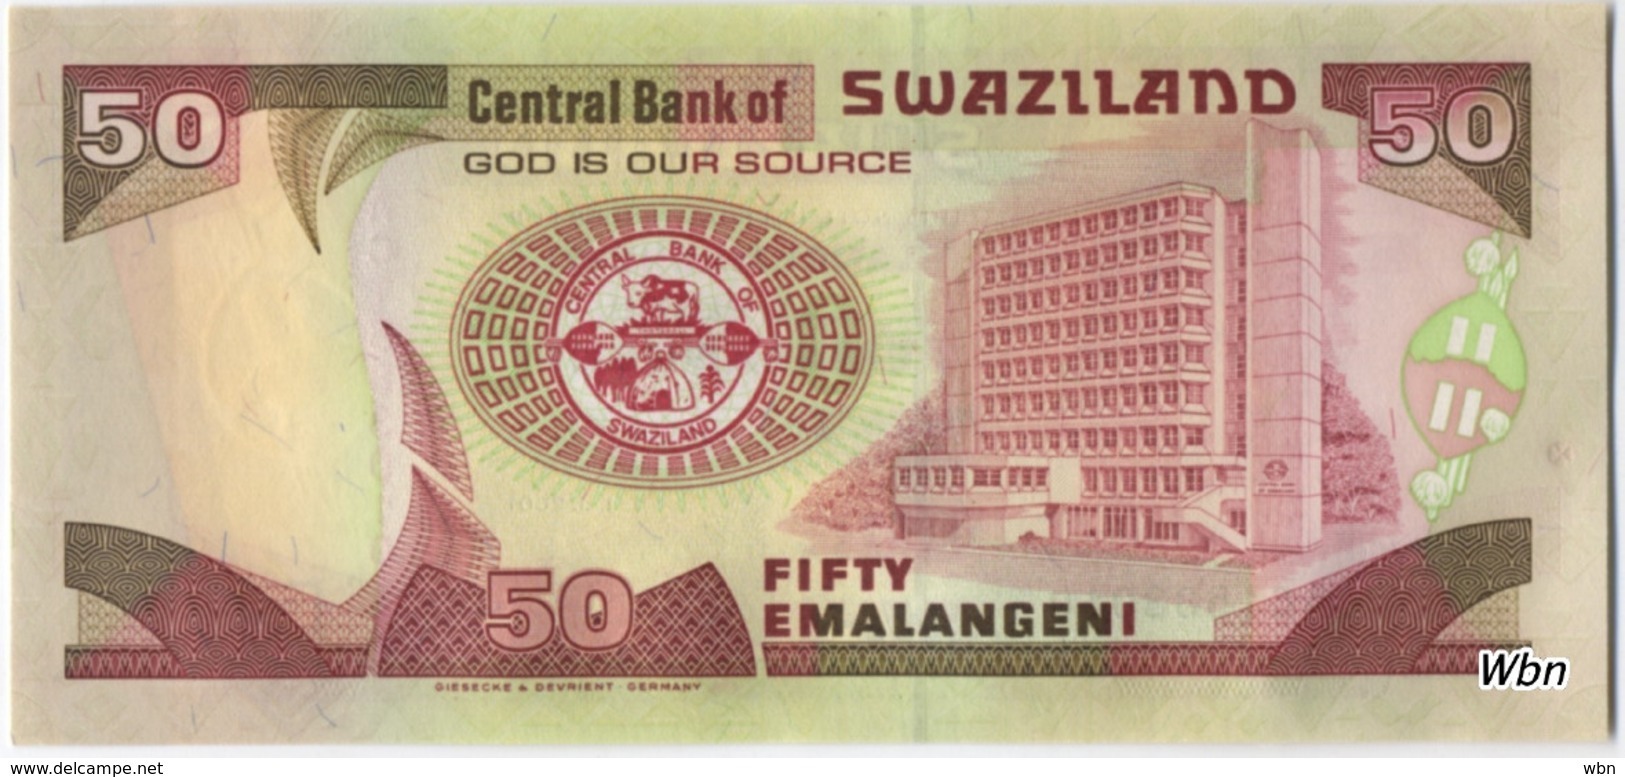 Swaziland 50 Emalangeni (P31) 2001 -UNC- - Swaziland